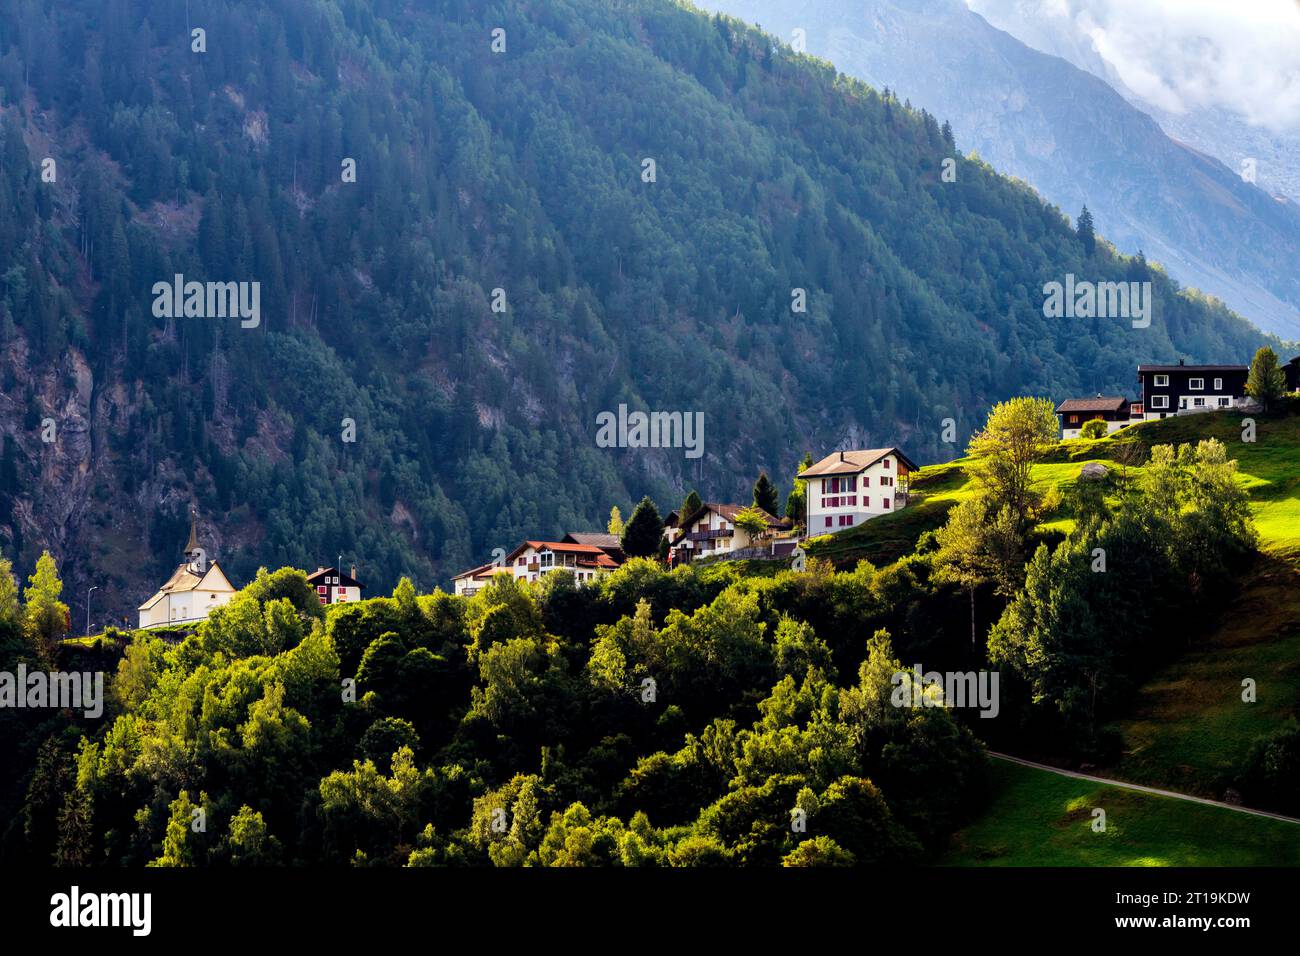 Vue panoramique sur le village Mompé Medel situé au sommet de la colline. Canton de Graubünden (Canton des Grisons), Suisse. Mompé Medel (signifiant : au Banque D'Images